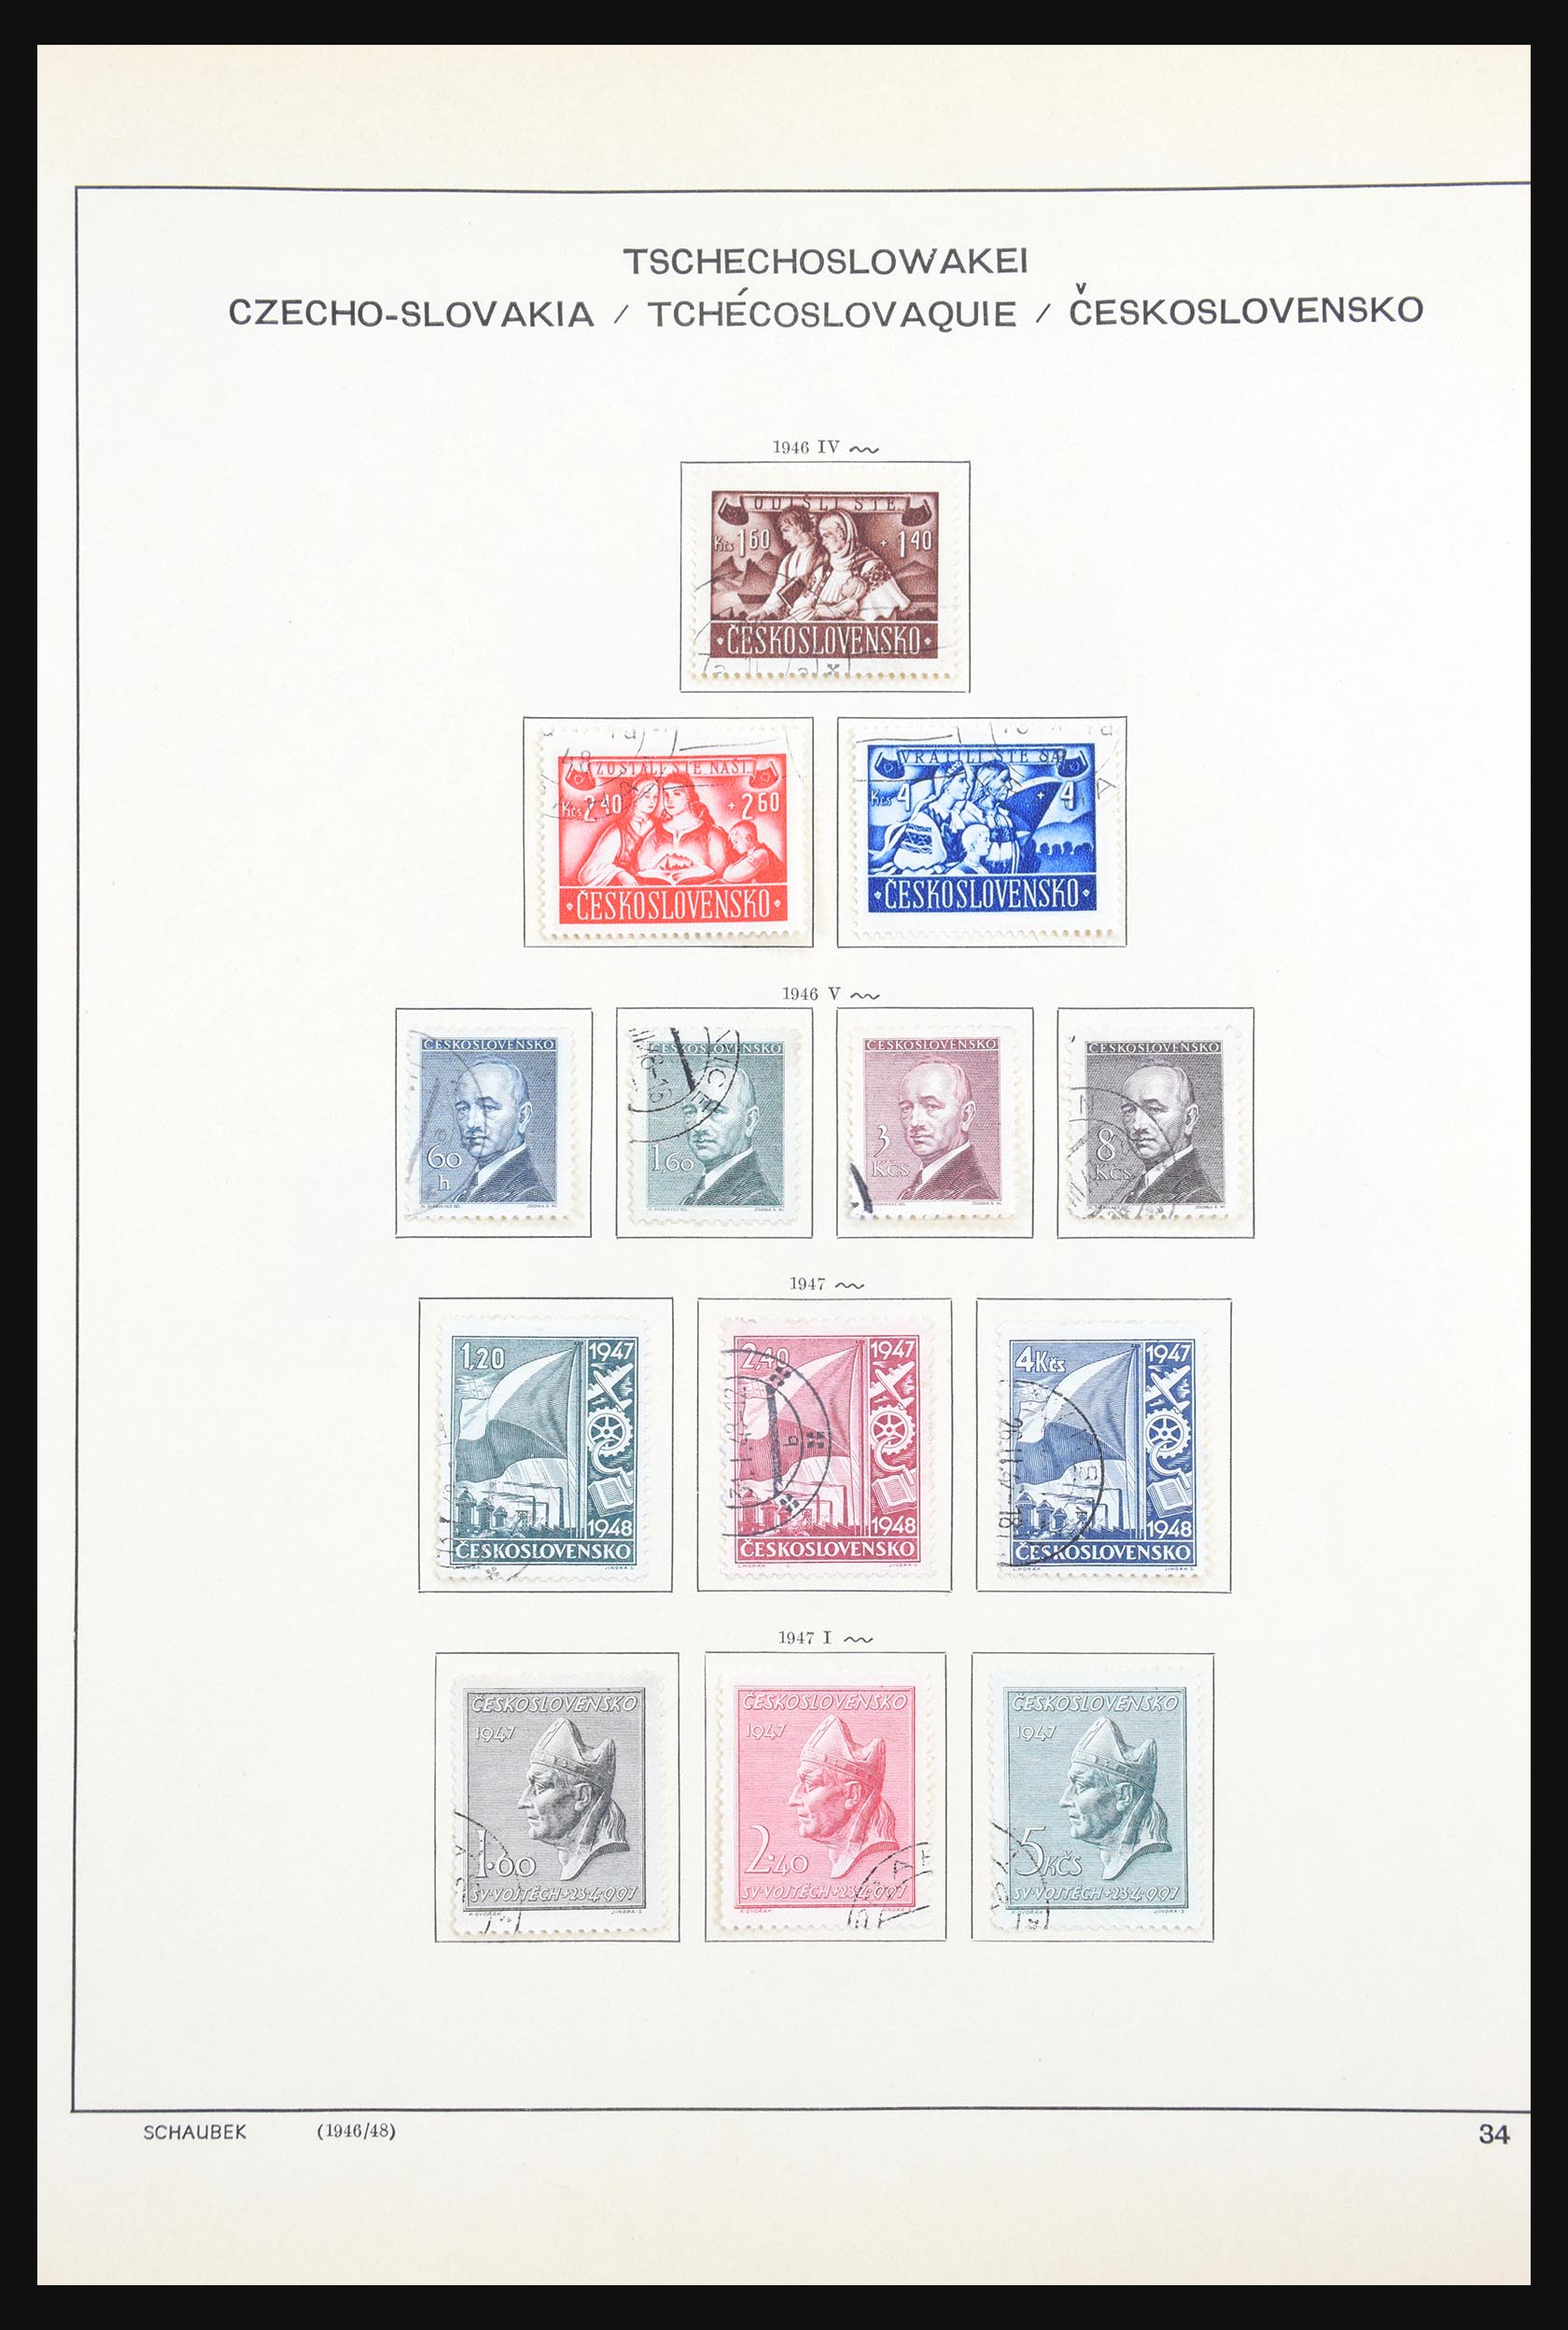 30606 057 - 30606 Czechoslovakia 1918-1983.